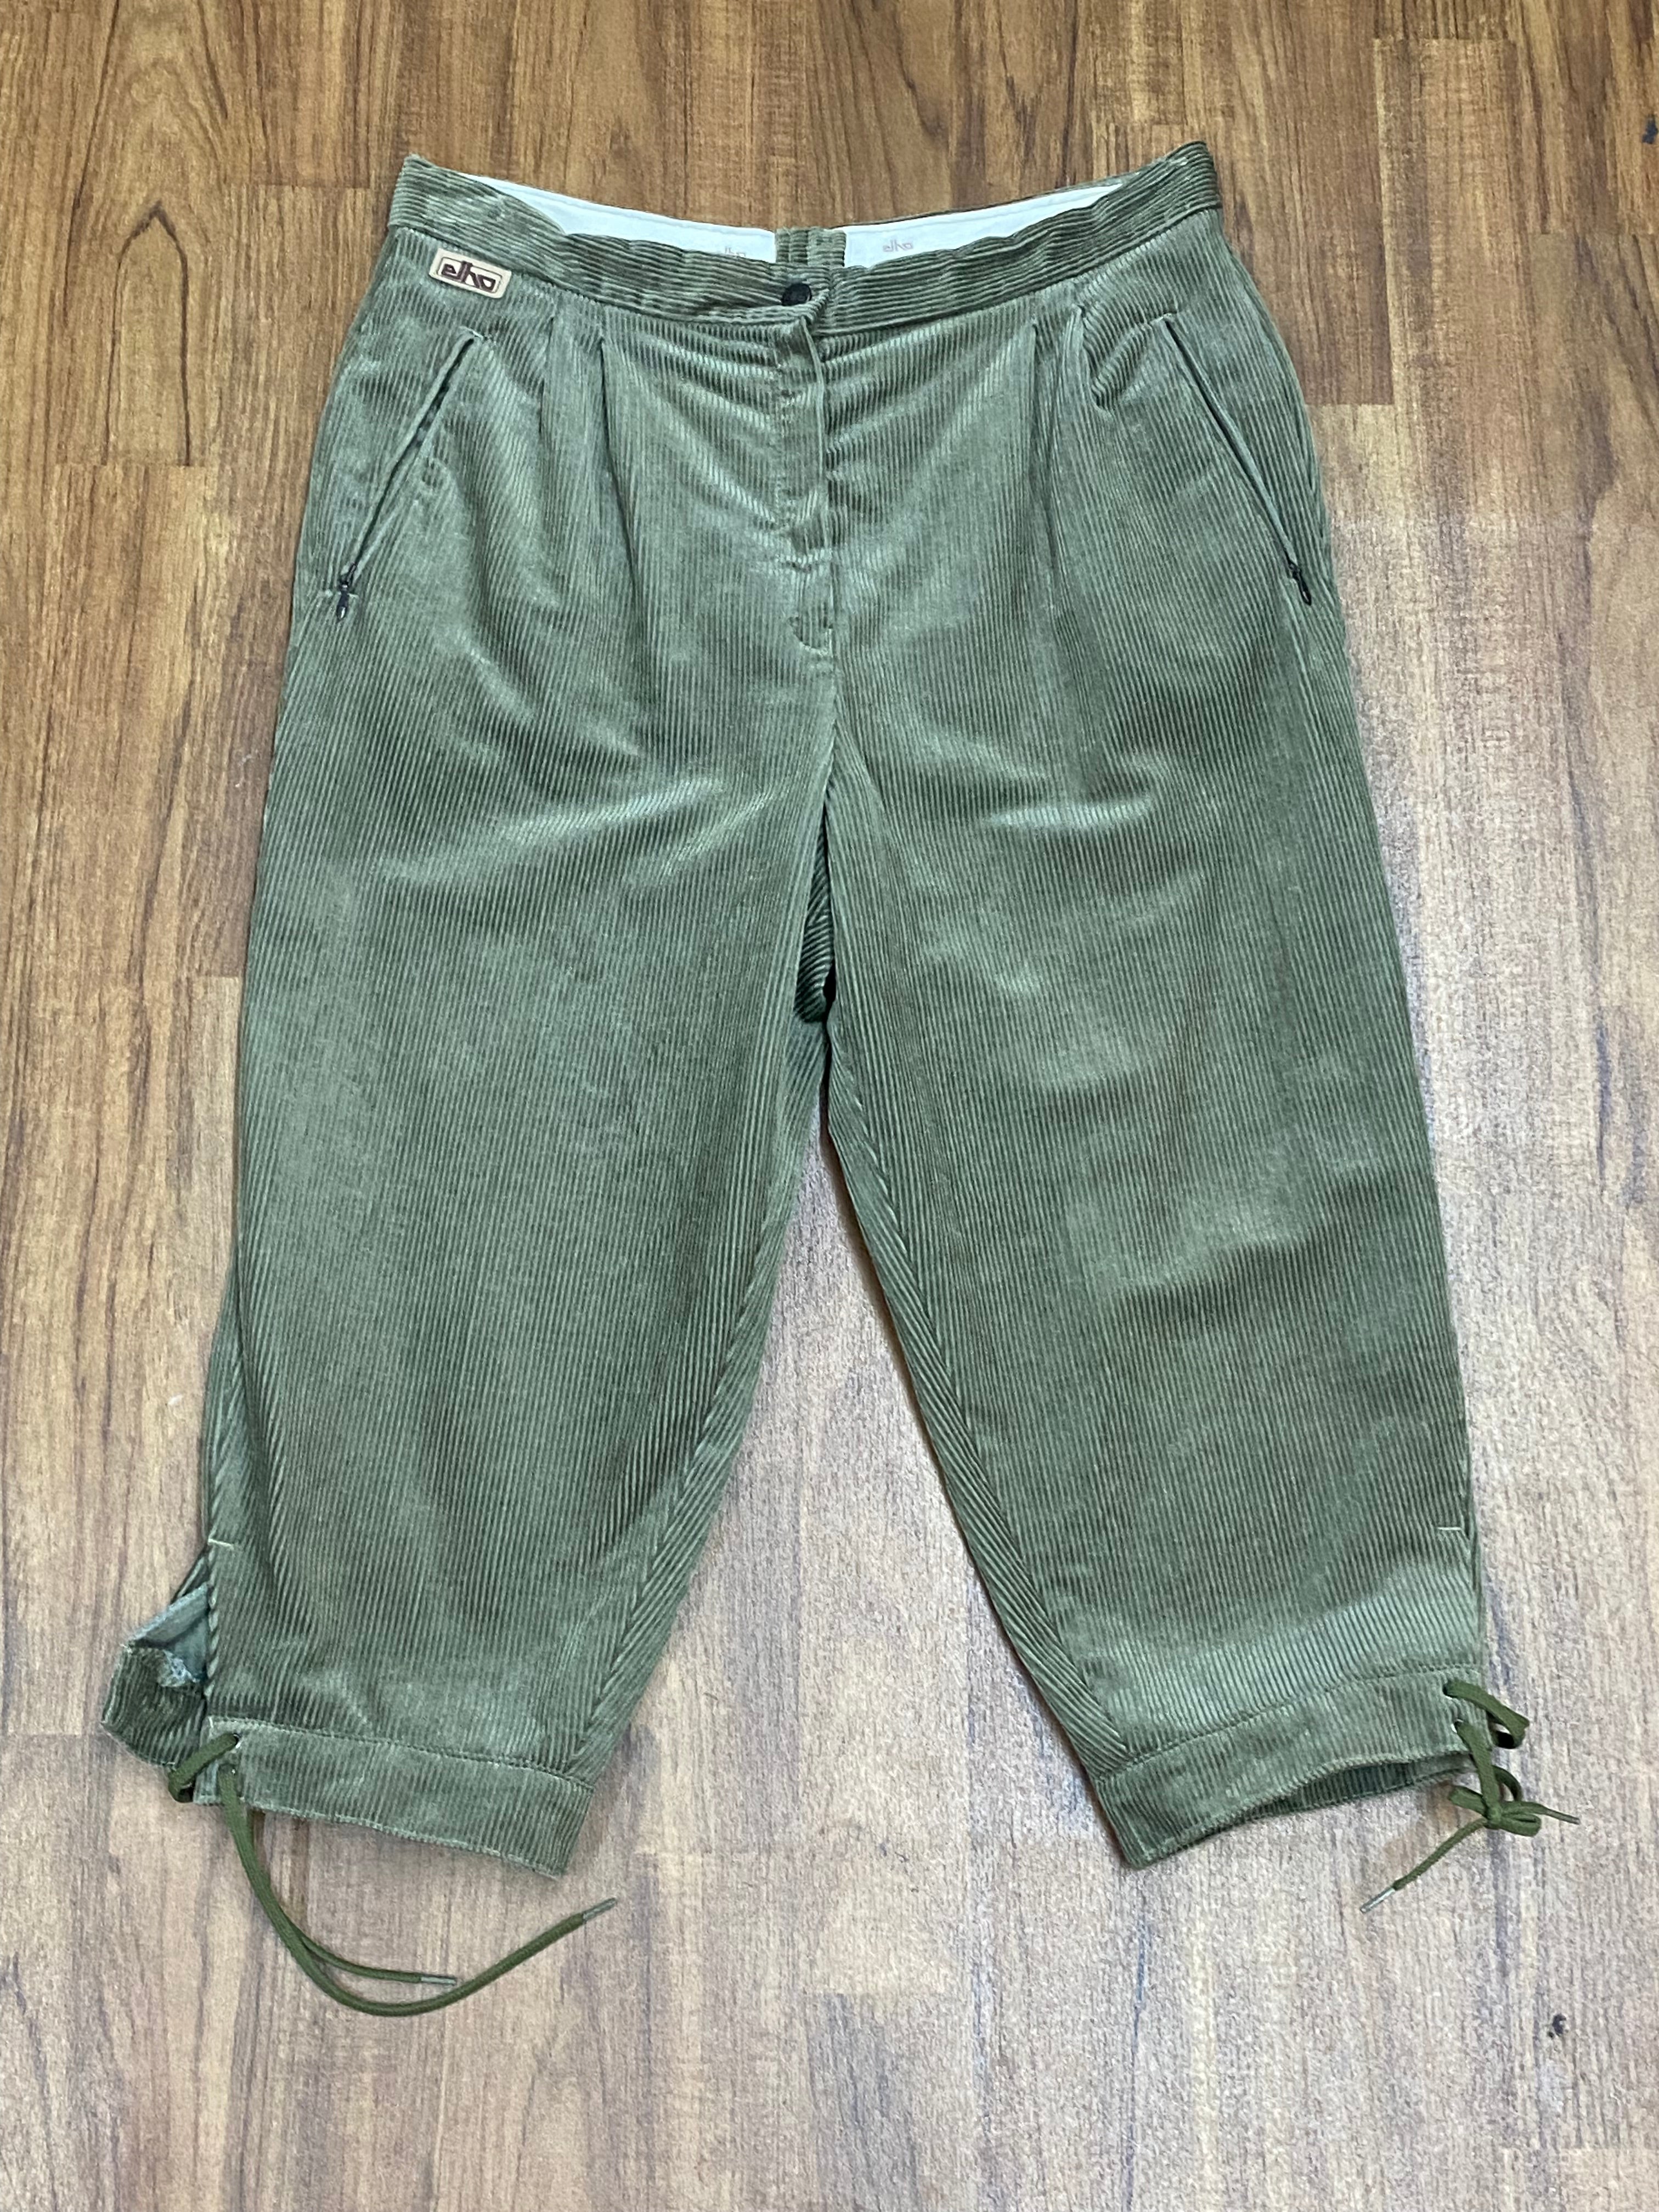 Grüne Vintage Trachtenhose, Kniebund Cordhose Bundweite 86 cm Unisex Gr.44